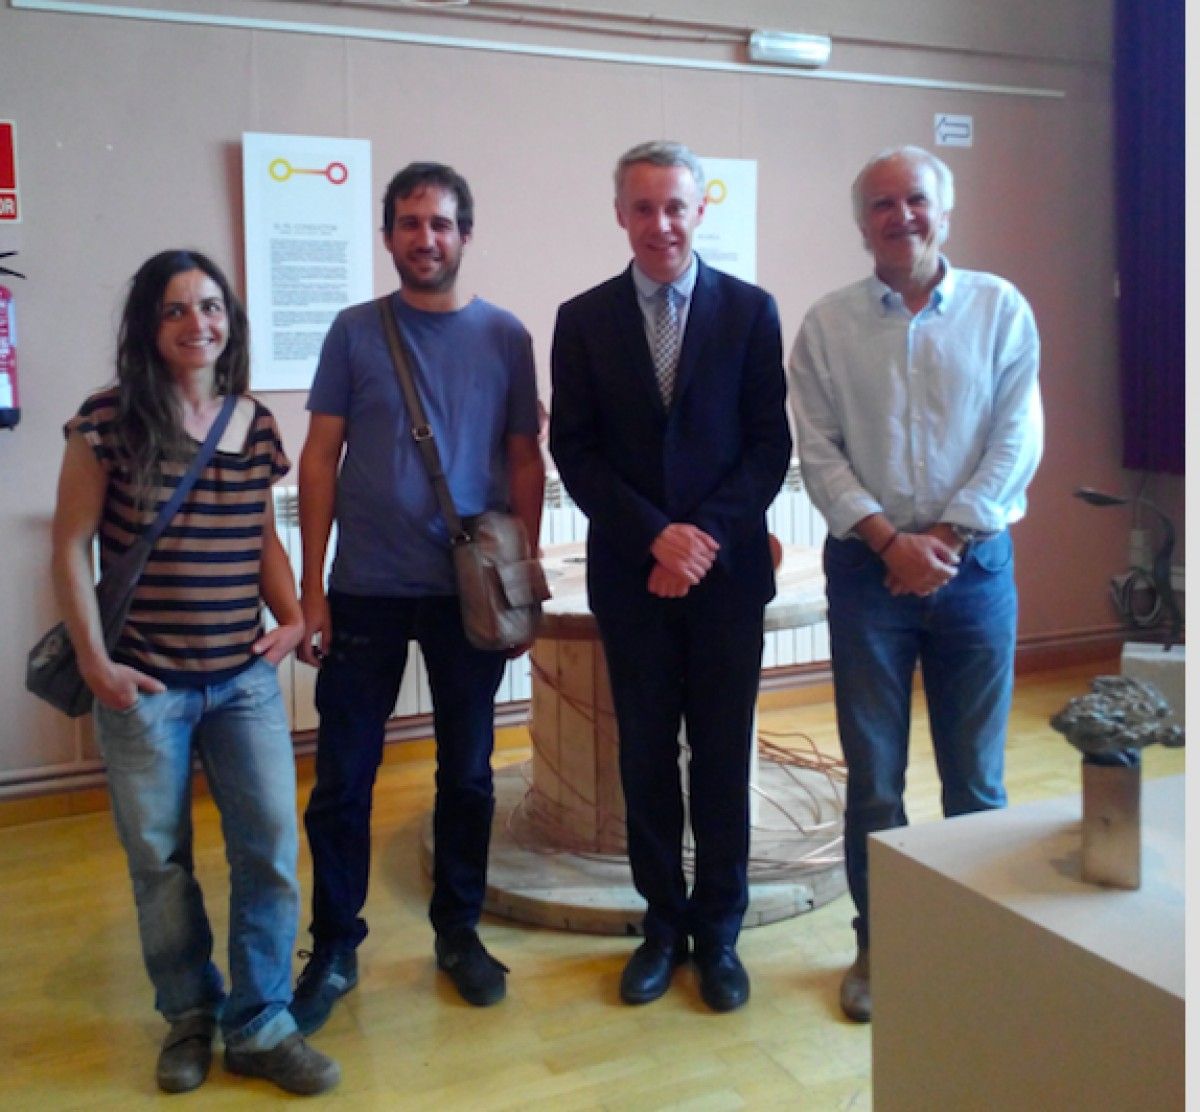 L'alcalde de Puigcerdà amb alguns dels artistes que exposen en aquesta mostra.